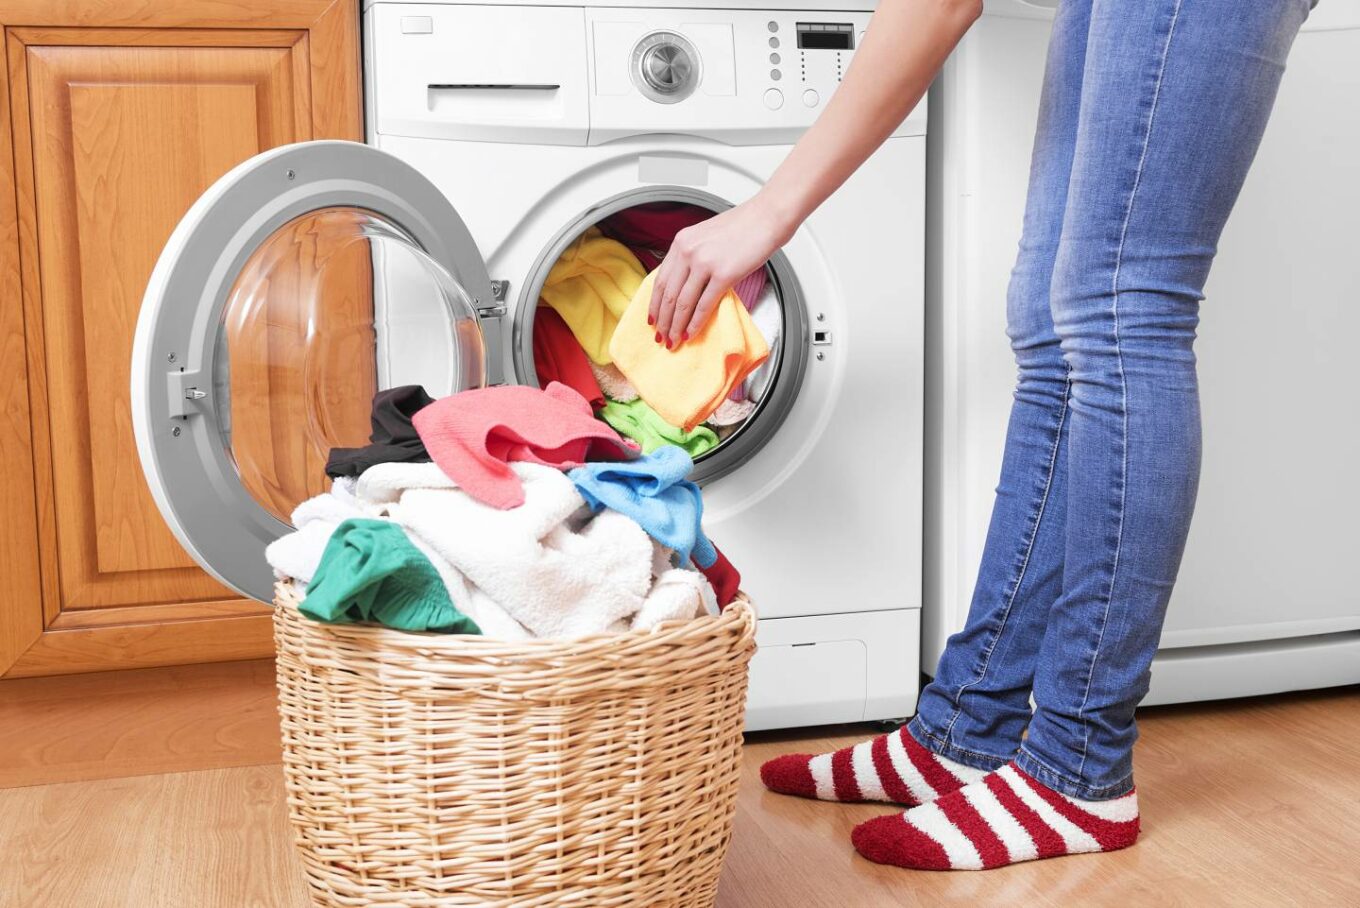 Cuci Secara Terpisah Dari Pakaian Berbahan Lain baju satin awet